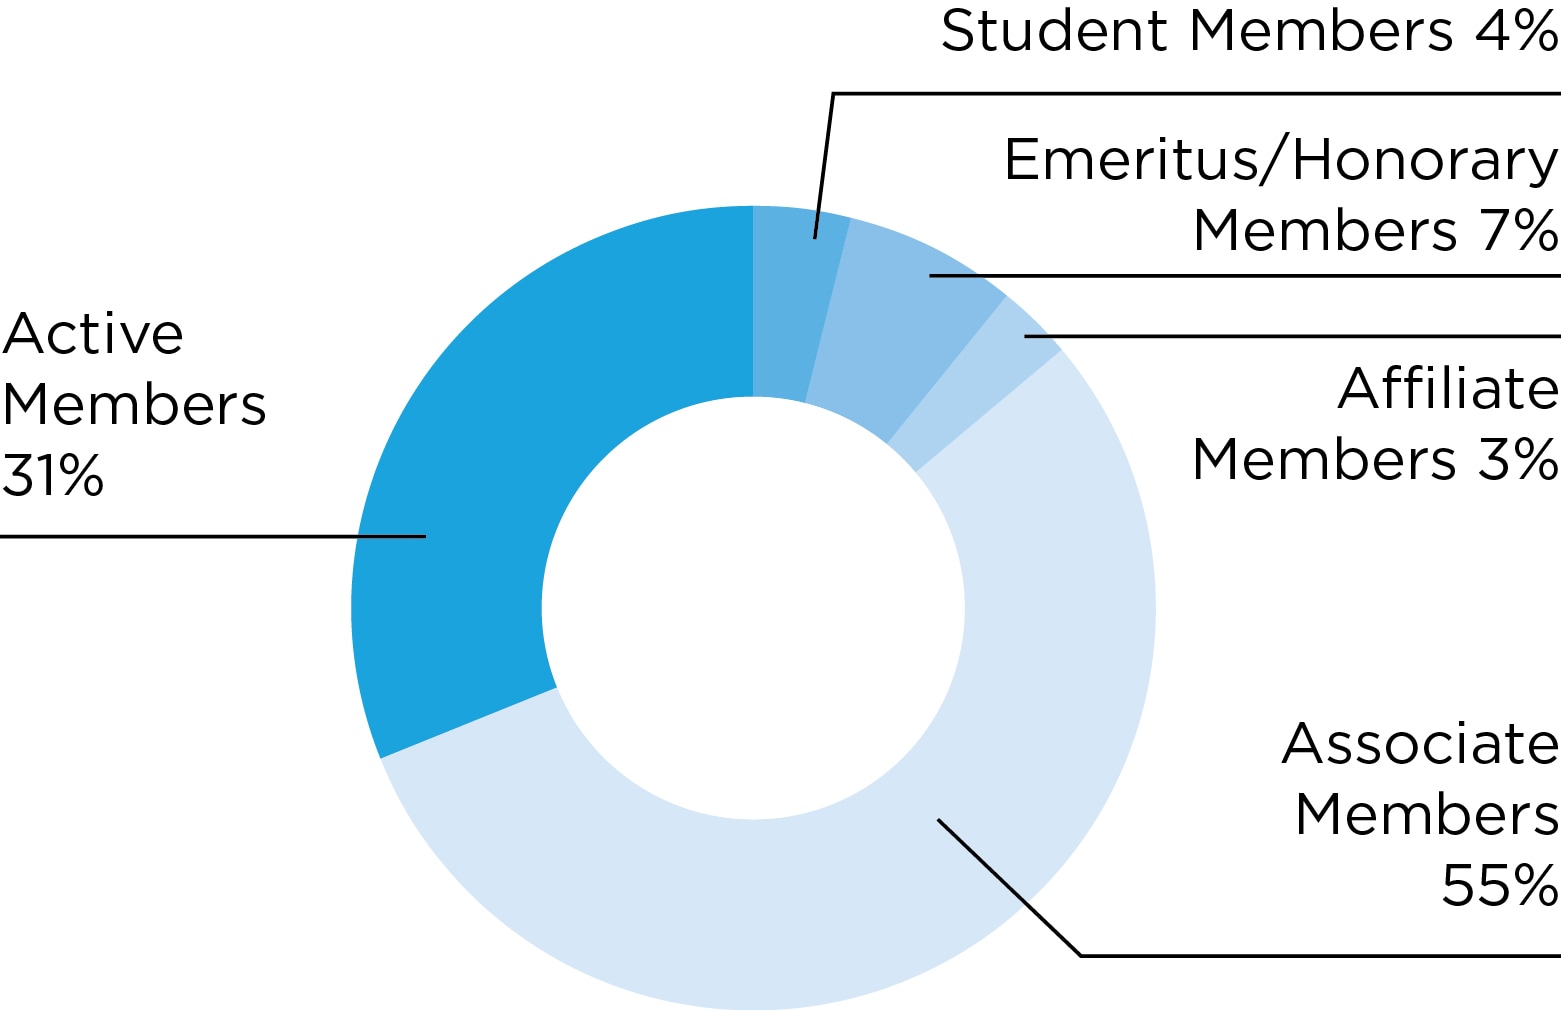 Chart: AACR members by category: Active members, 31 percent; Associate members, 55 percent; Emeritus/Honorary members, 7 percent; Student members, 4 percent; Affiliate members, 3 percent.